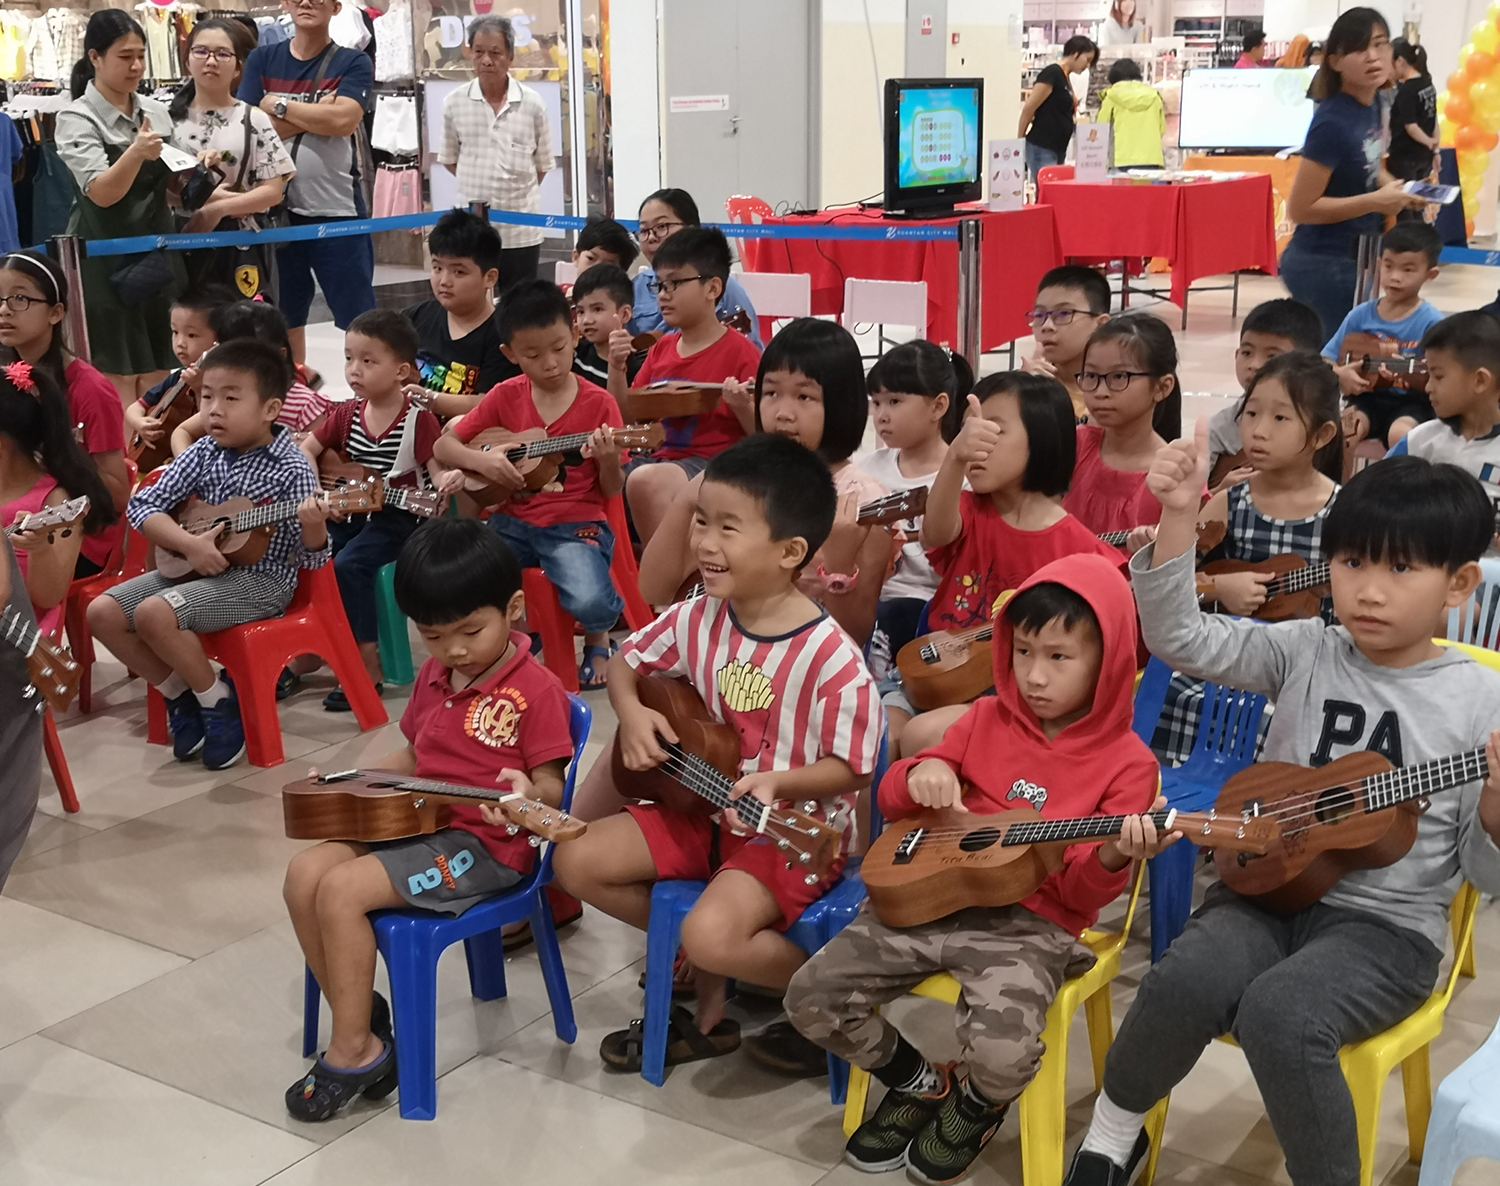 Kuantan Kids’ Music Day - Kuantan City Mall, Kuantan, Pahang